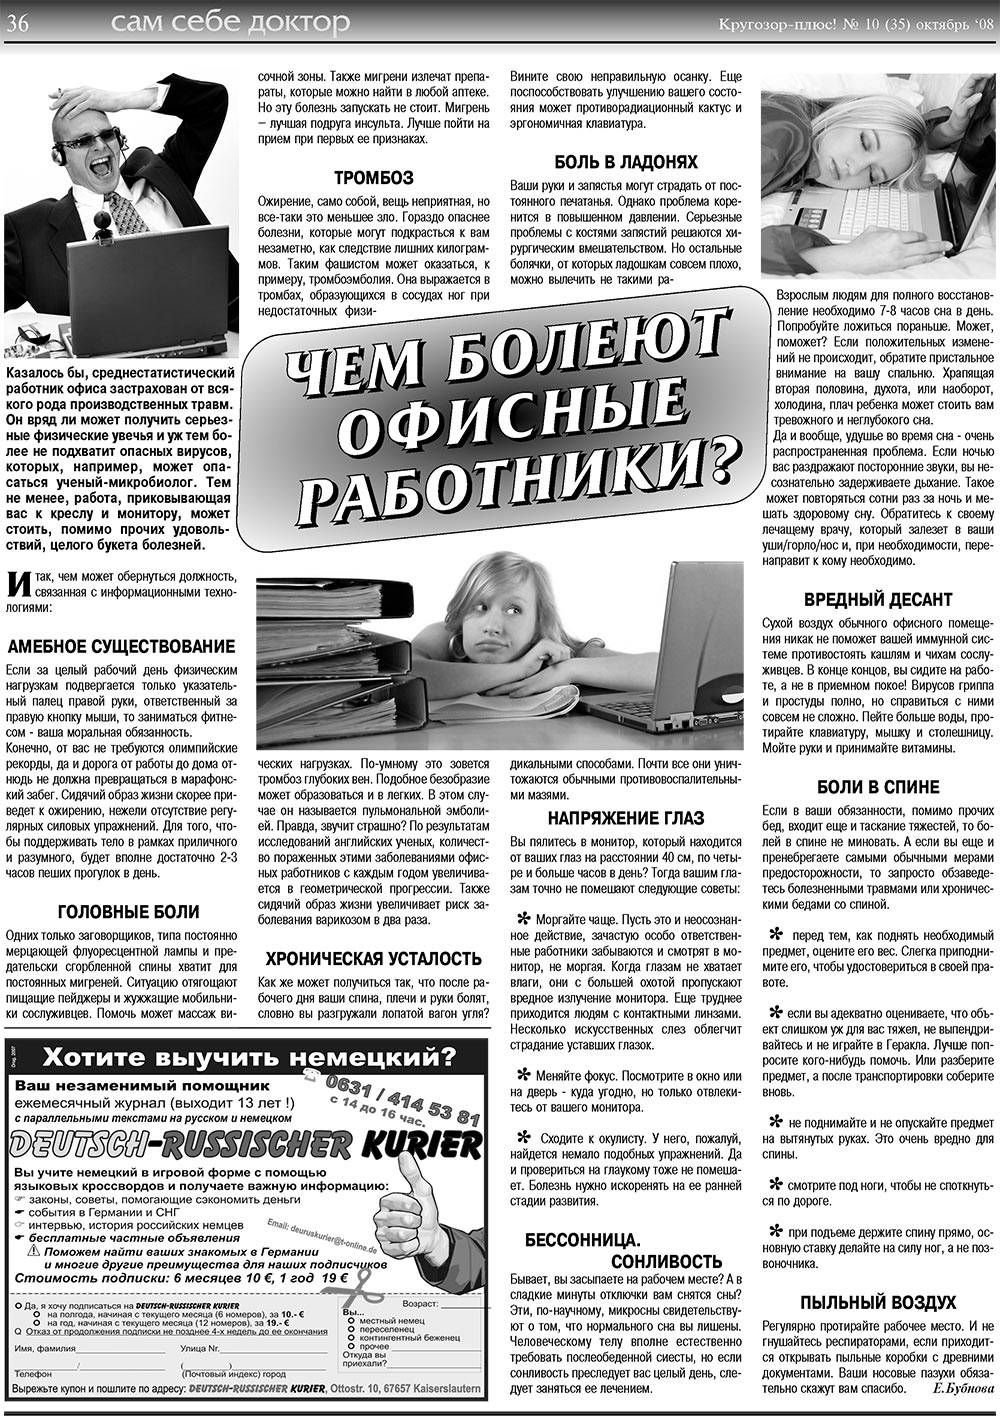 Кругозор плюс!, газета. 2008 №10 стр.36